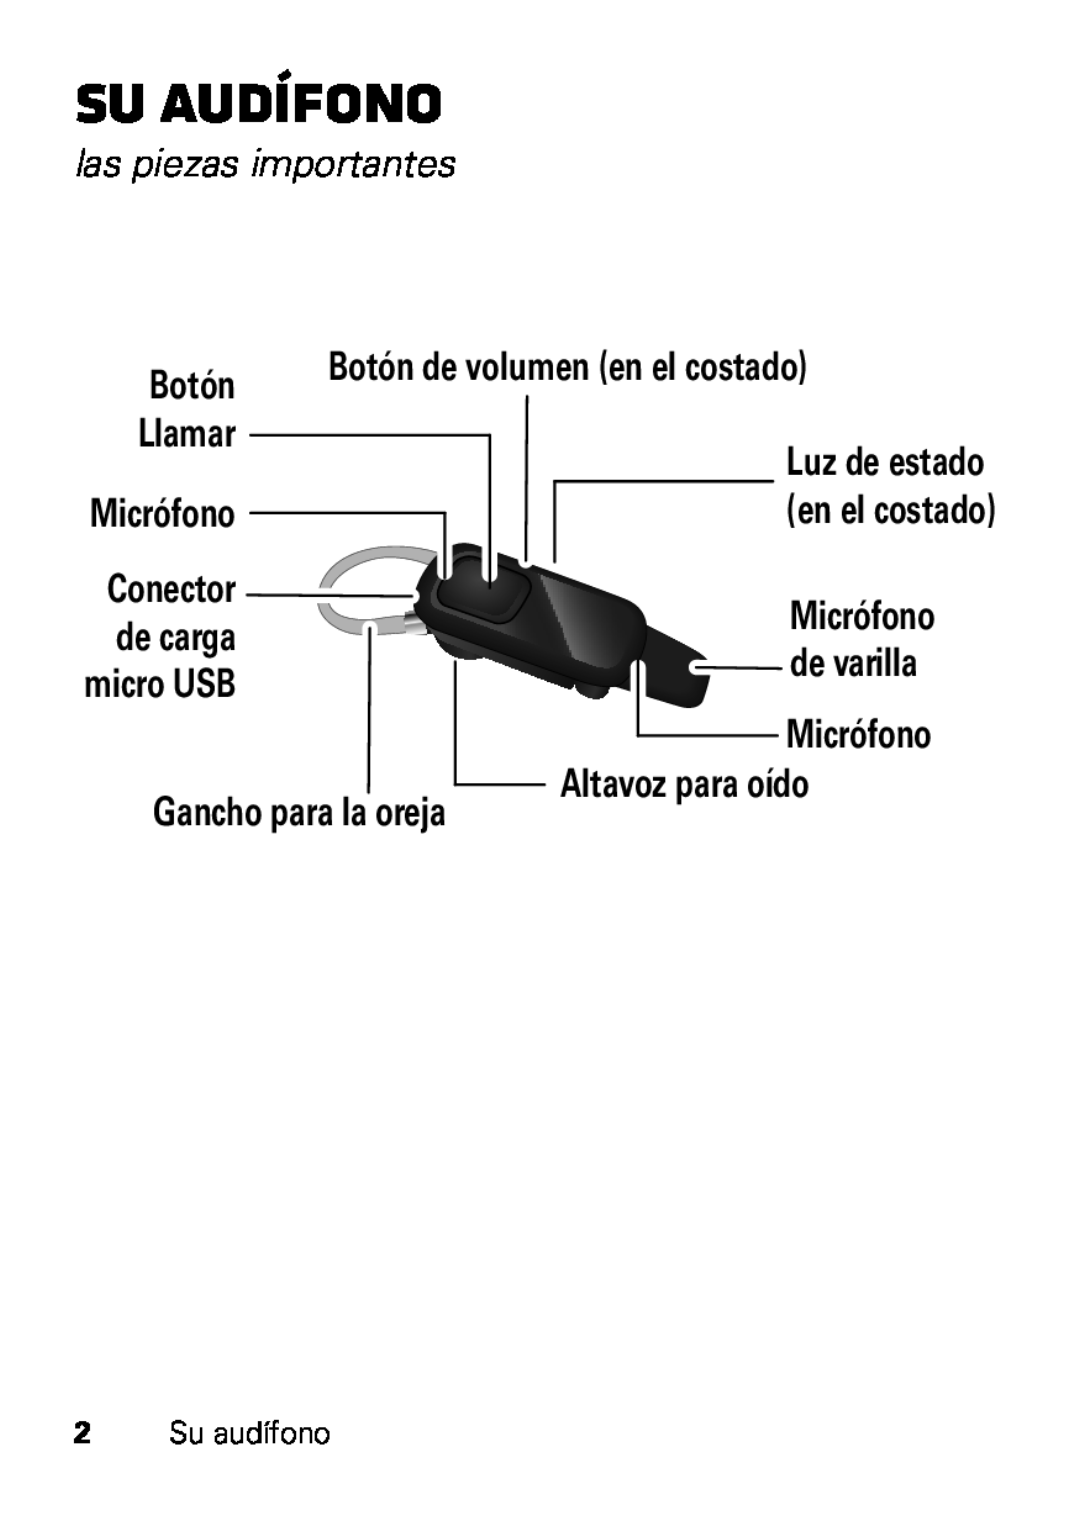 Motorola HX550 manual Su audífono, las piezas importantes, Botón de volumen en el costado, Llamar, Altavoz para oído 